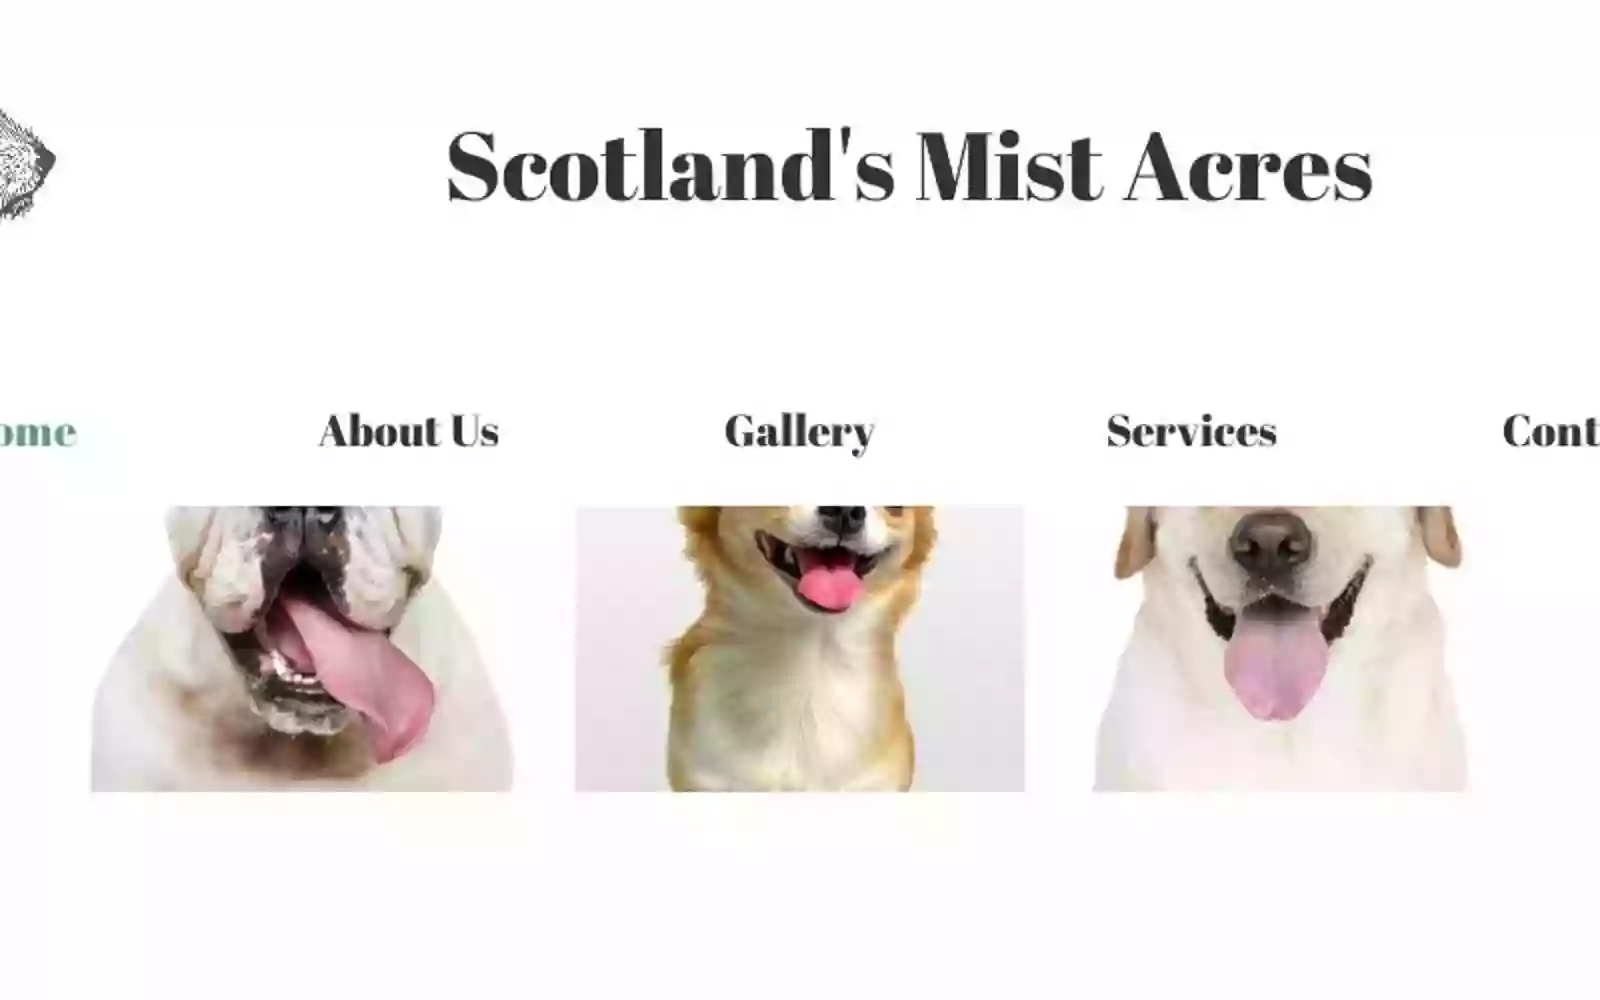 Scotland's Mist Acres